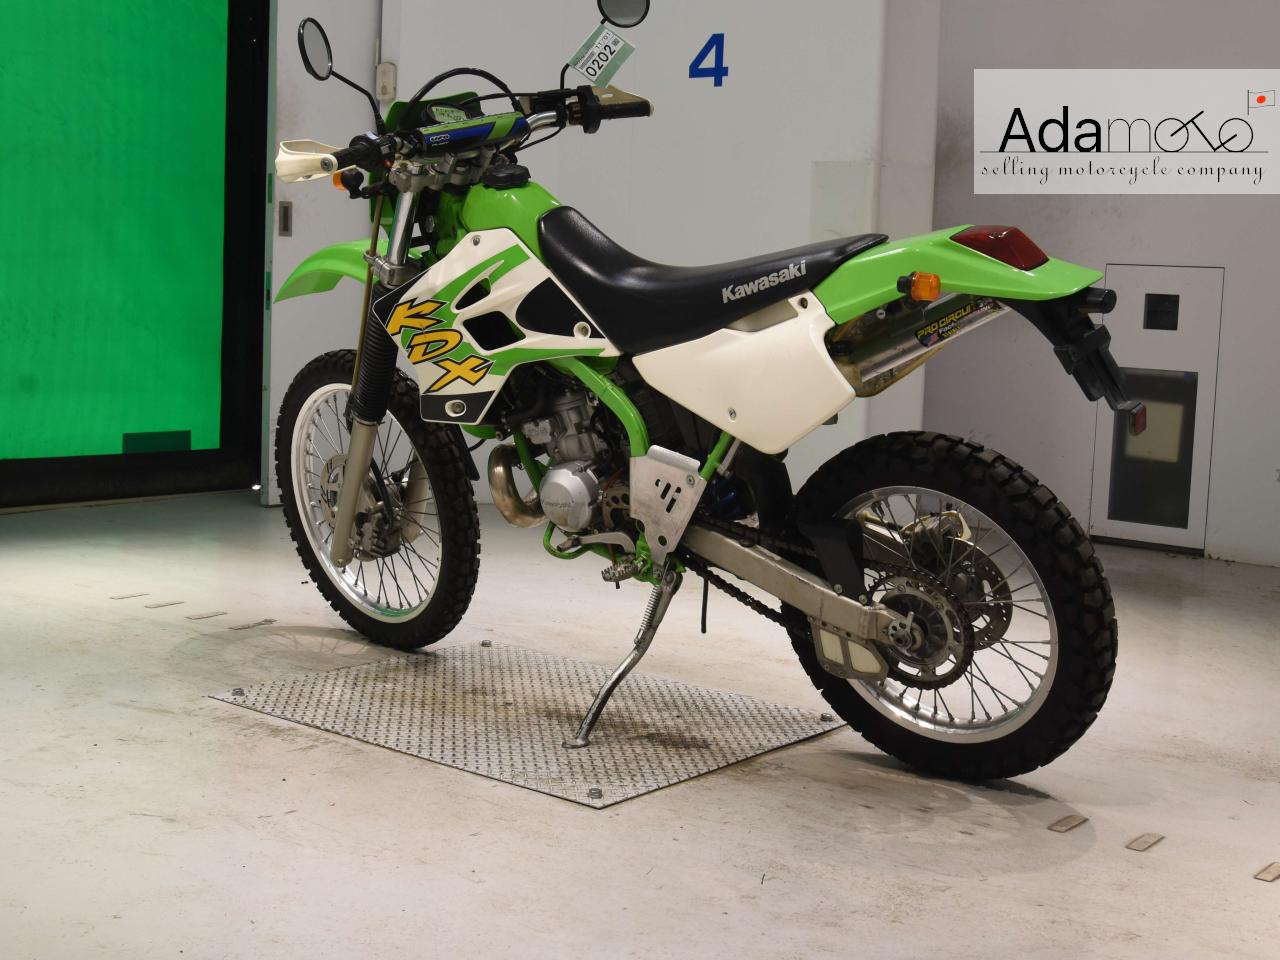 Kawasaki KDX220SR - Adamoto - Motorcycles from Japan